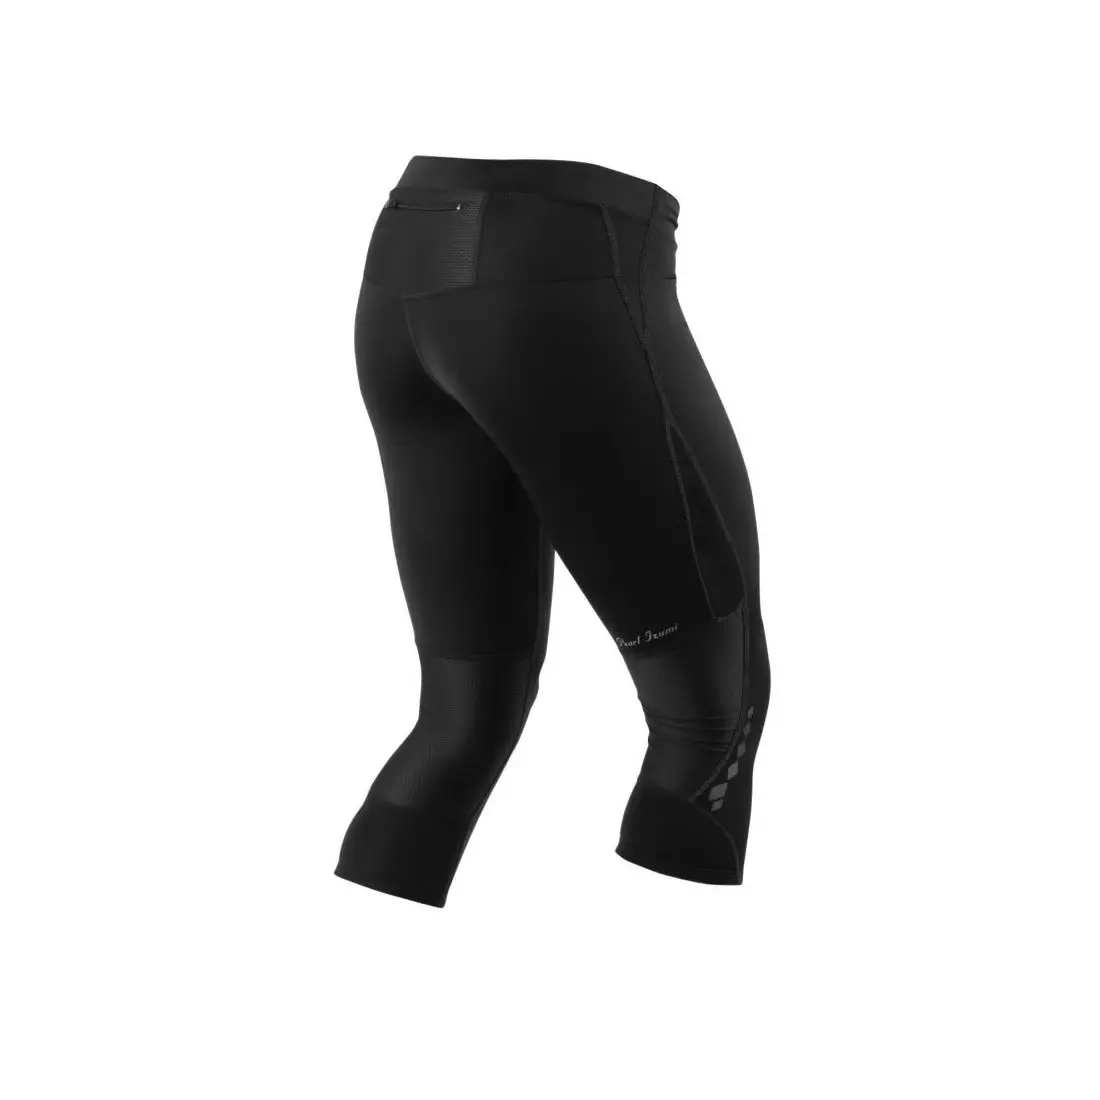 PEARL IZUMI - W's SELECT Aurora Splice Kincker 12211109-021 - women's 3/4 shorts, color: Black